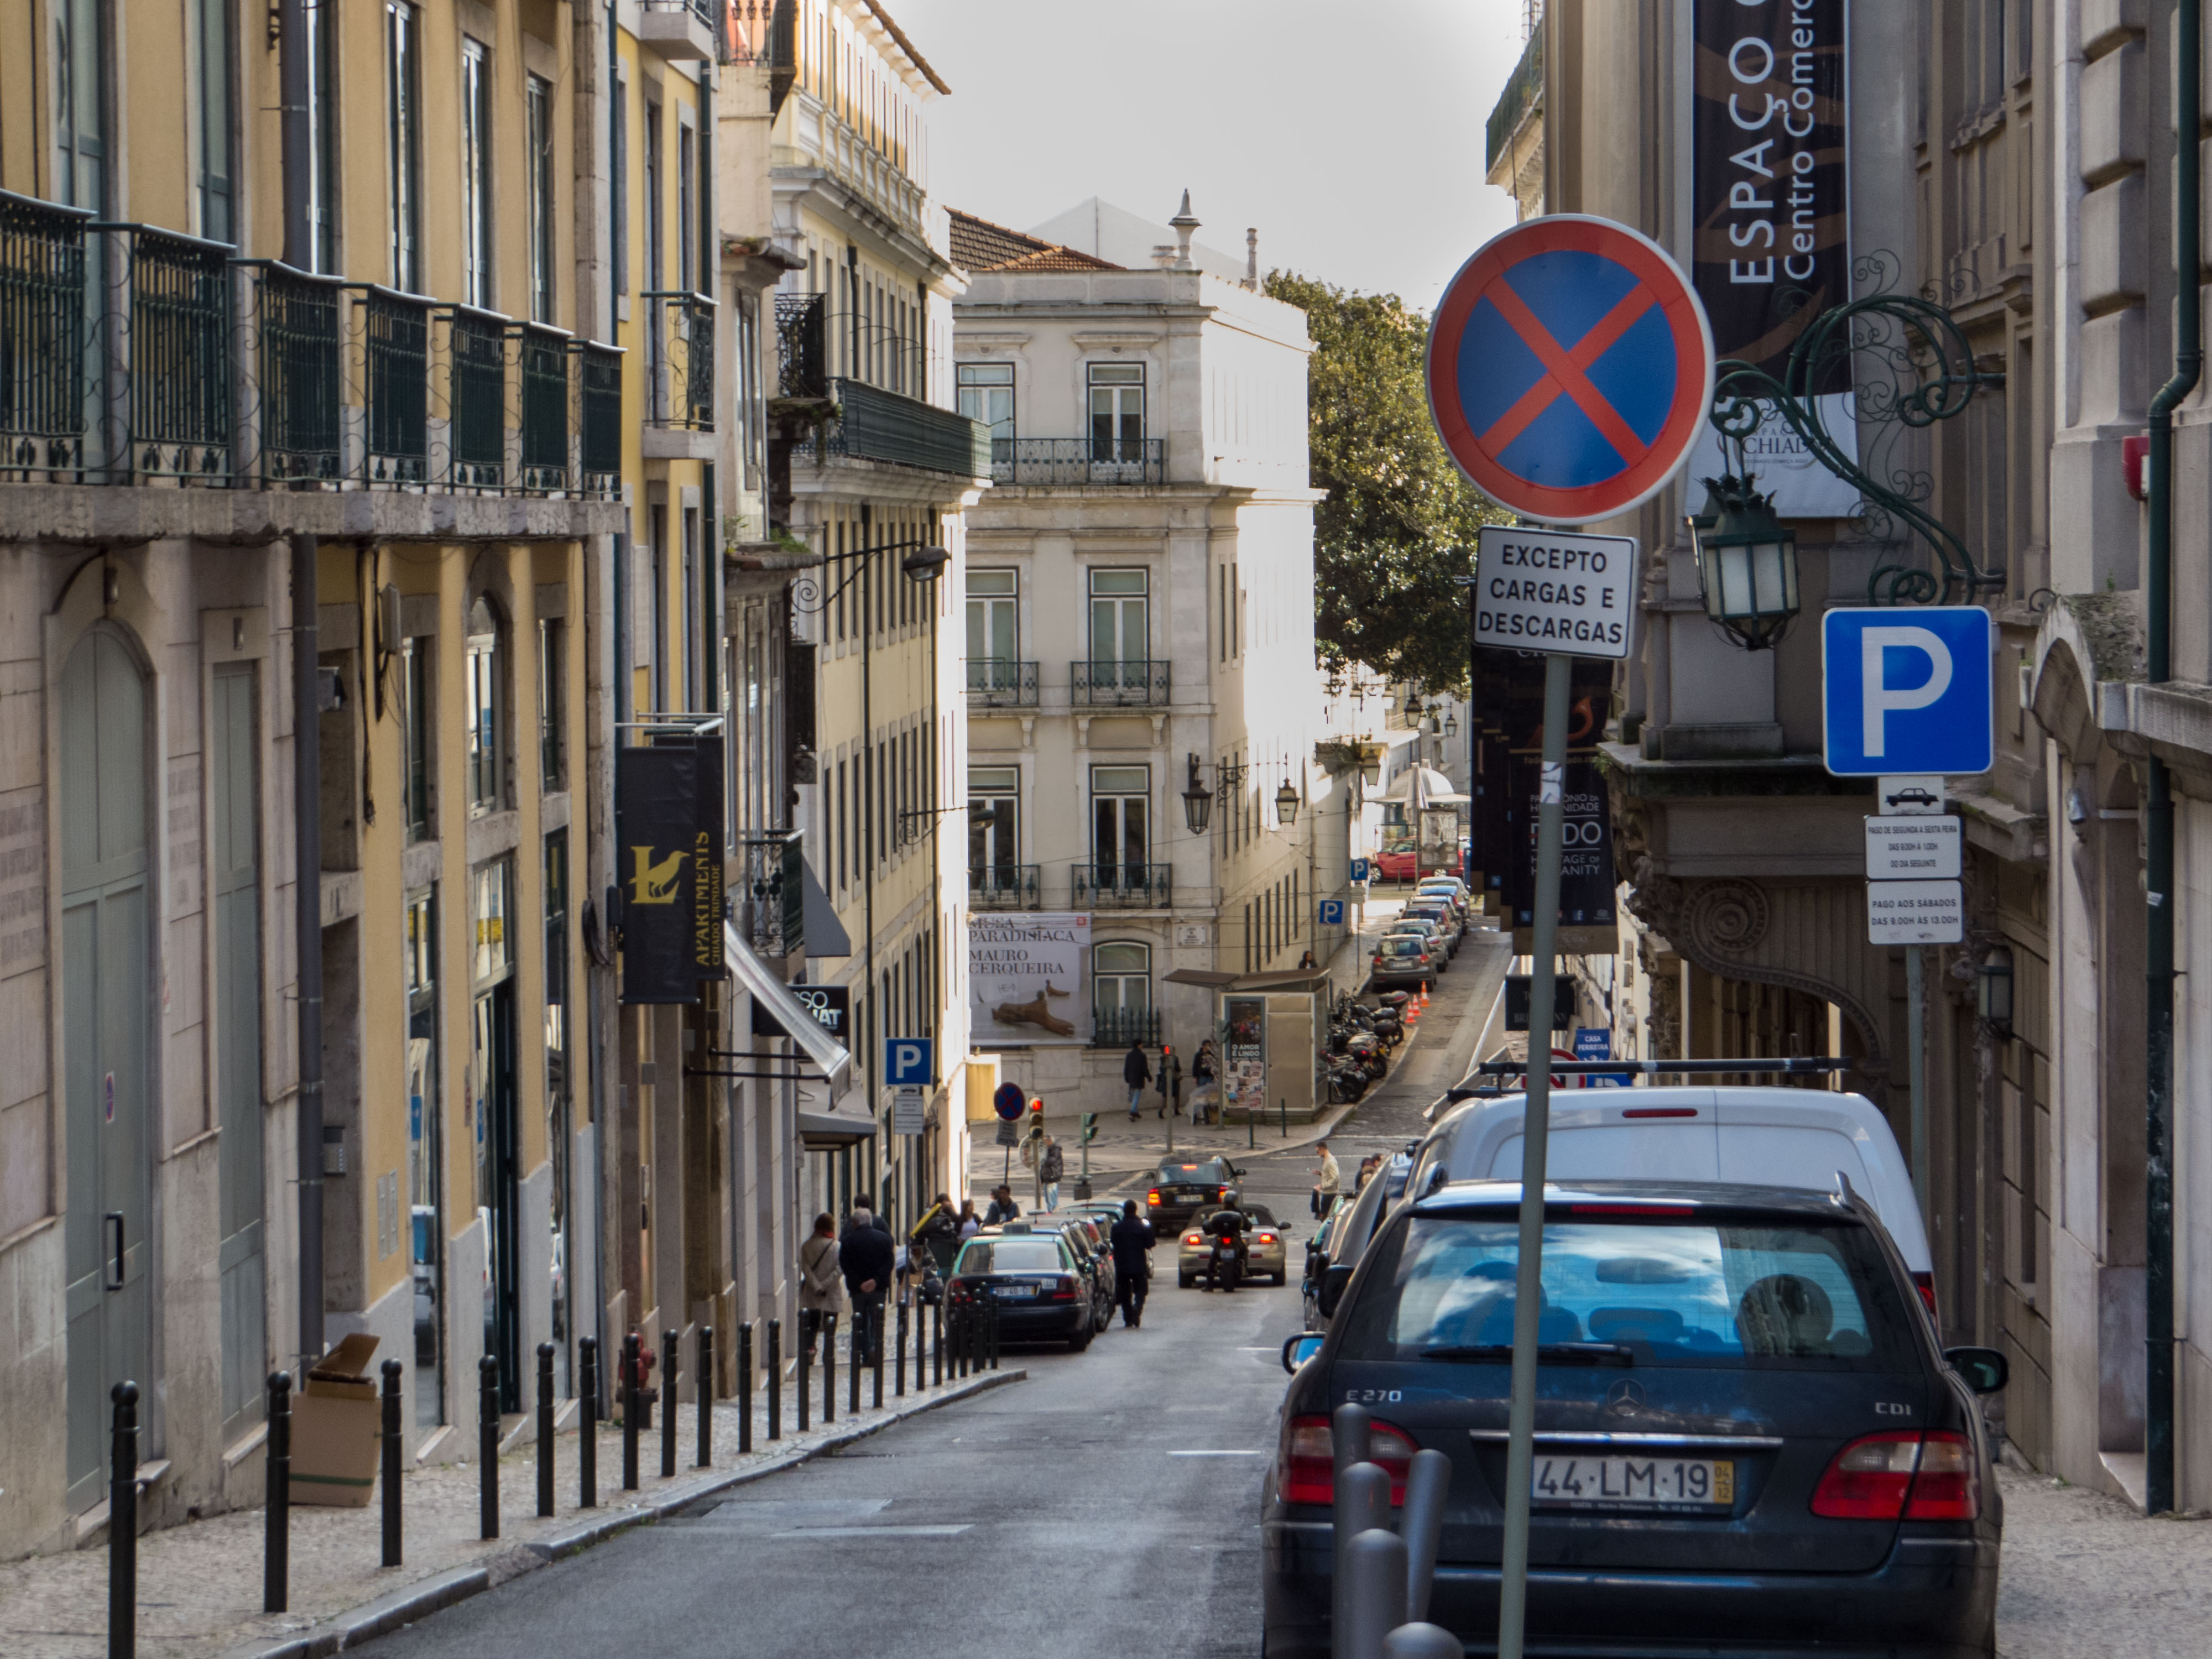 Narrow streets of lisbon photo